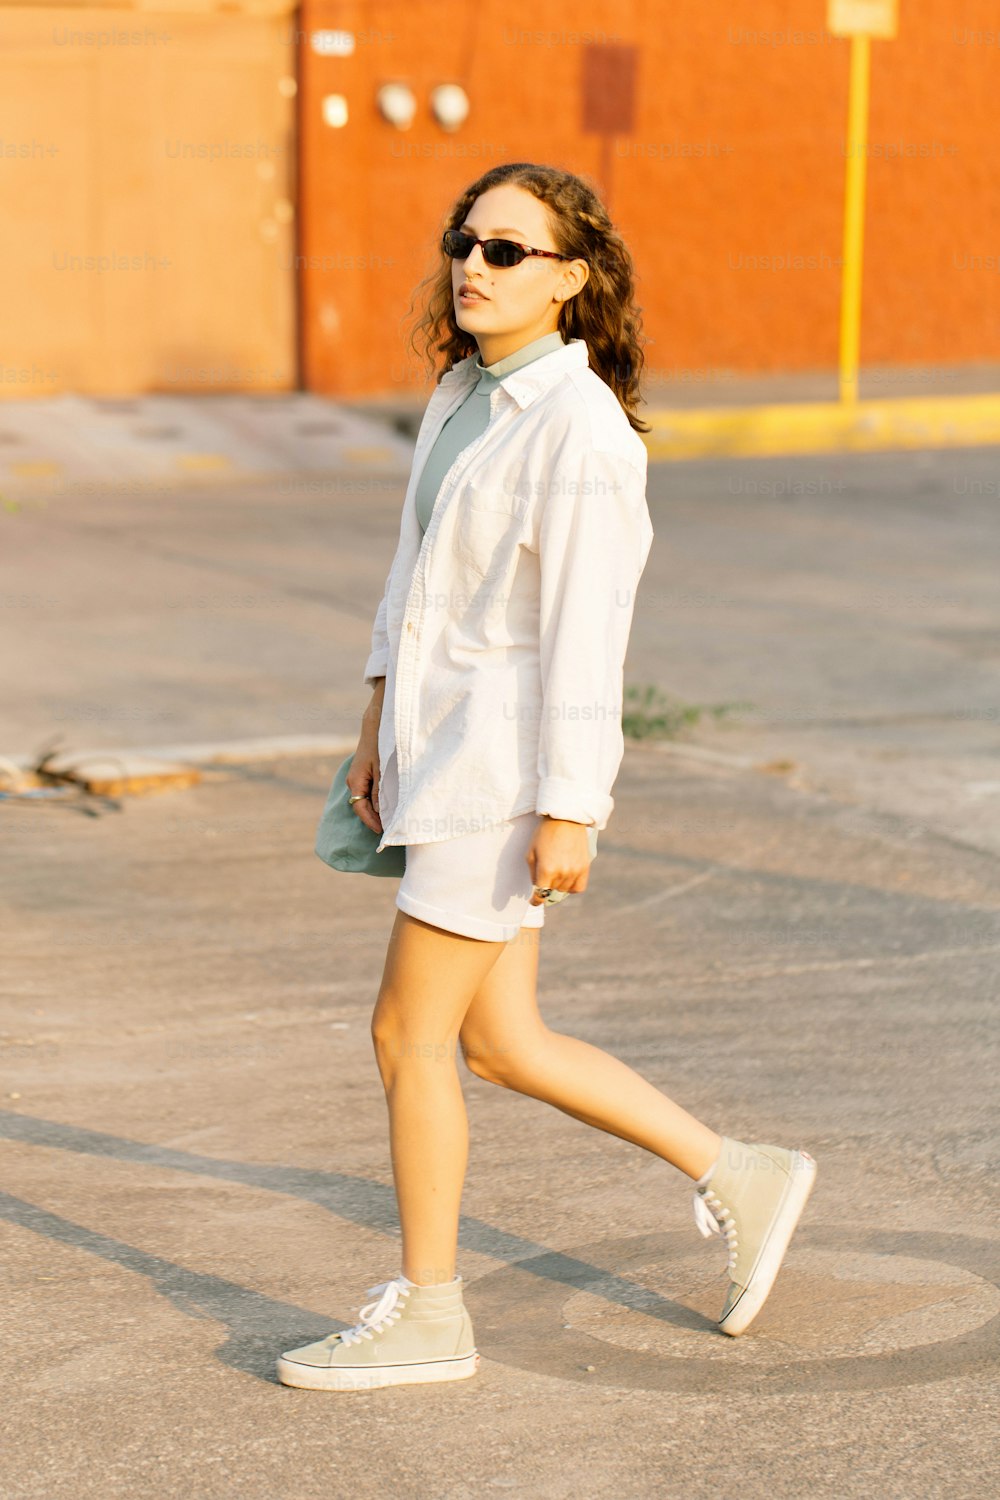 a woman walking across a parking lot wearing sunglasses